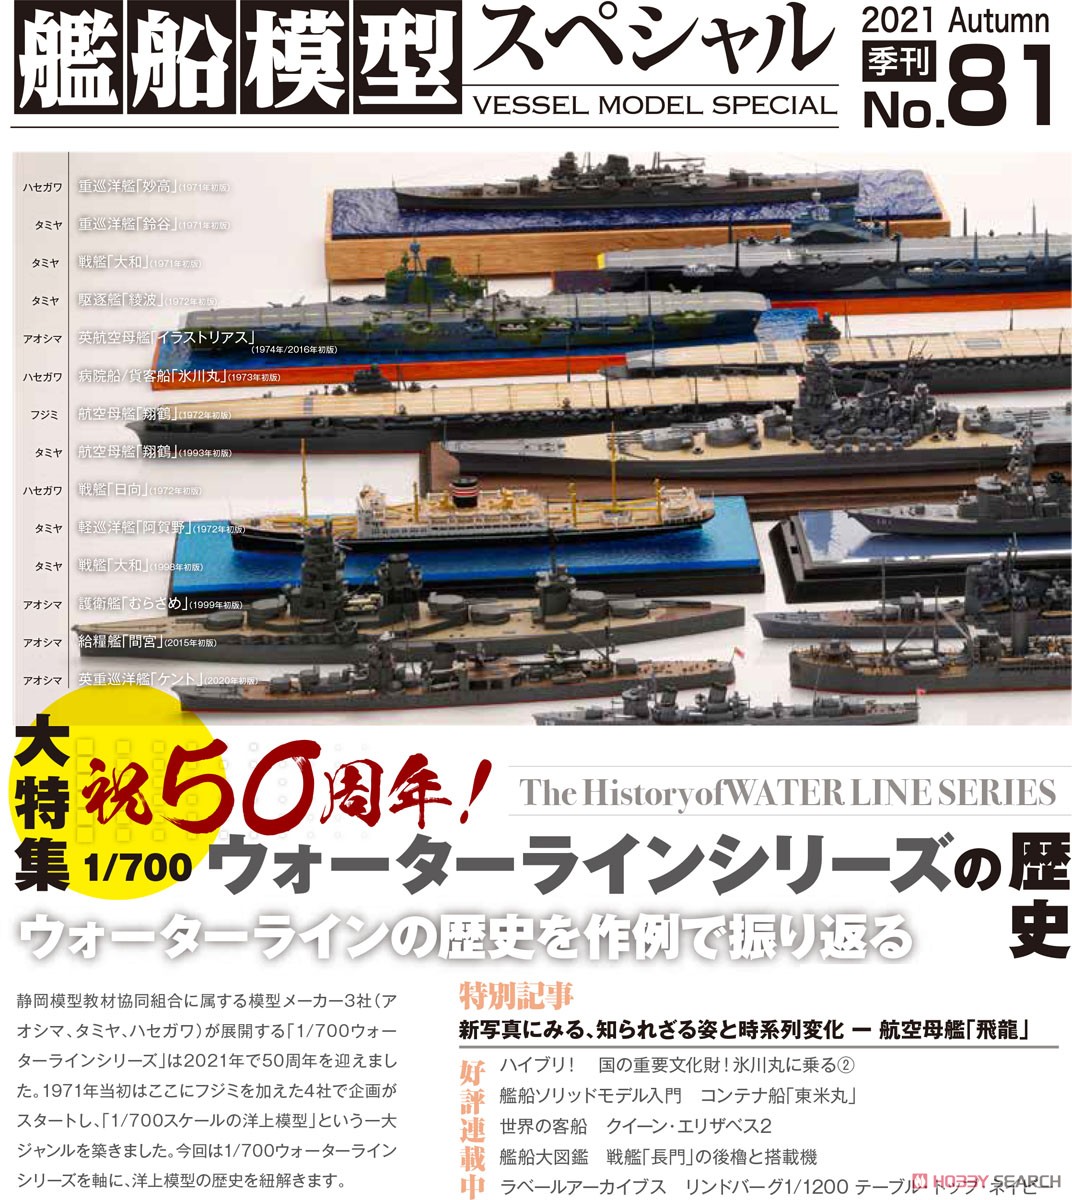 艦船模型スペシャル No.81 (書籍) その他の画像1